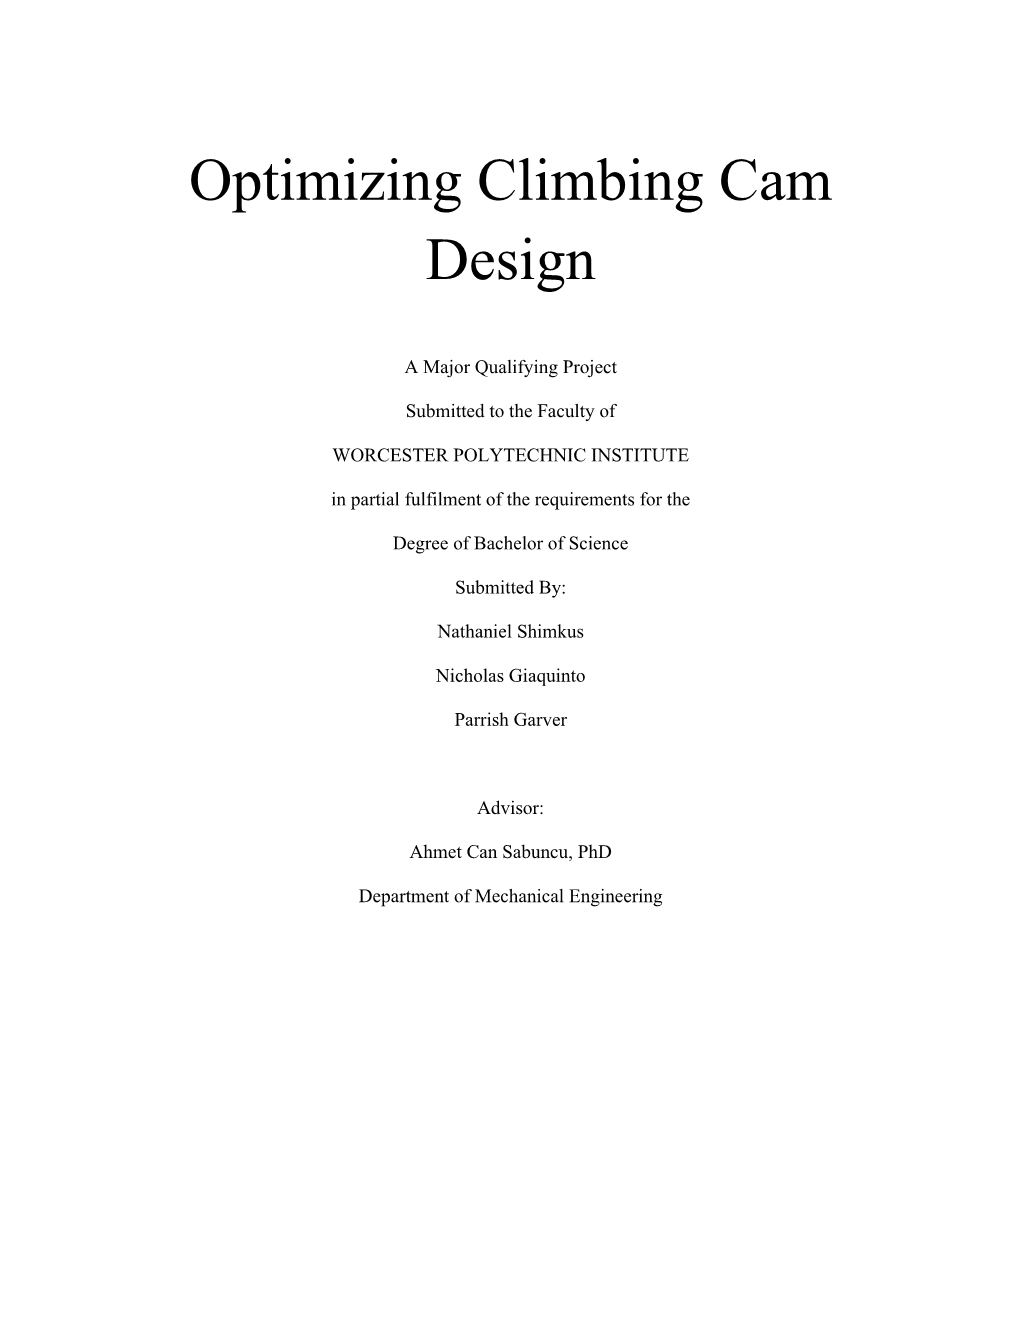 Optimizing Climbing Cam Design